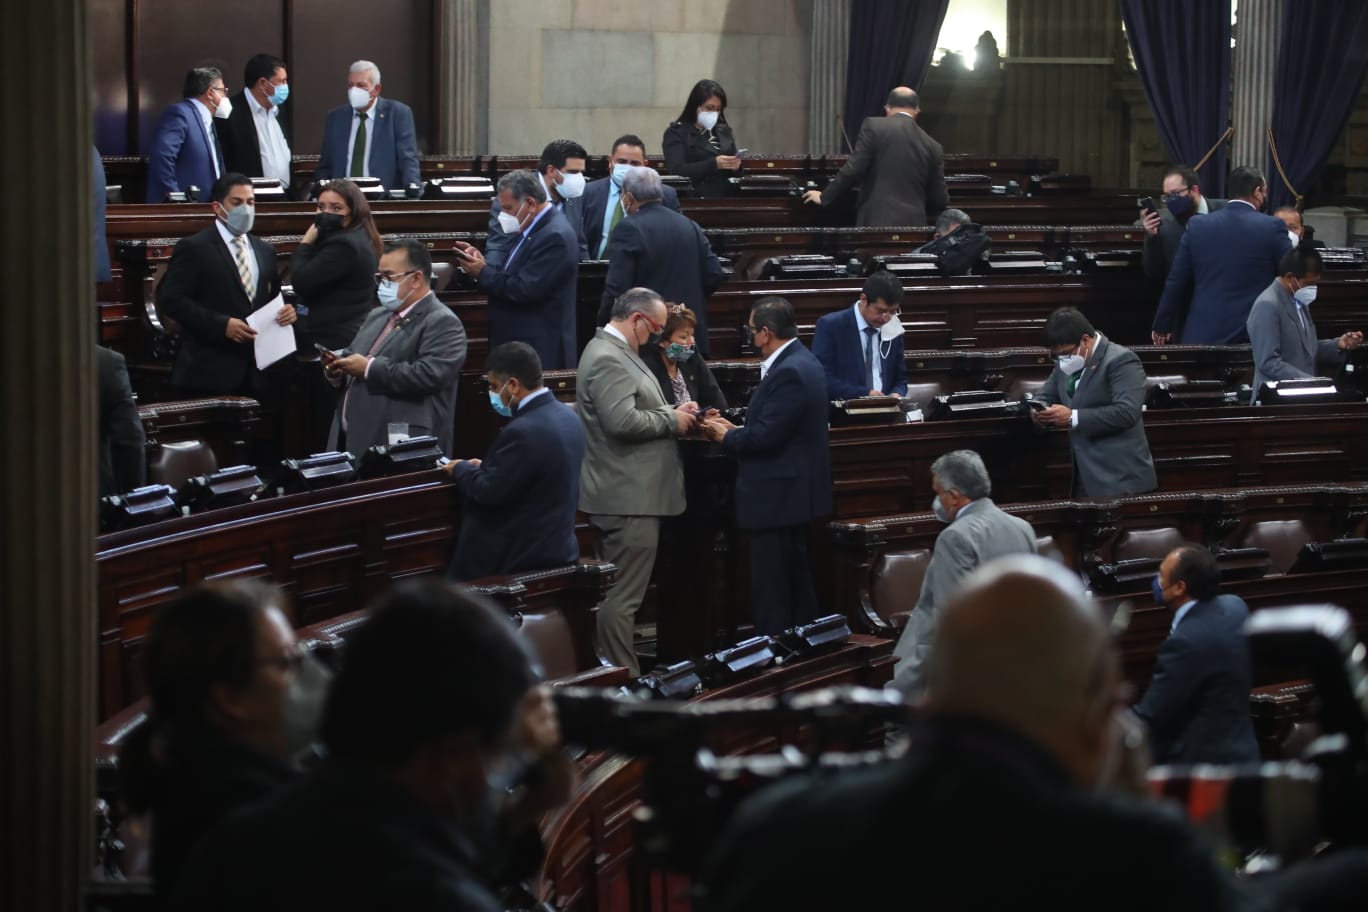 Diputados del Congreso aprobaron este jueves 13 de enero la convocatoria para integrar la Comisión de Postulación de fiscal general. (Foto Prensa Libre: Carlos Hernández Ovalle)